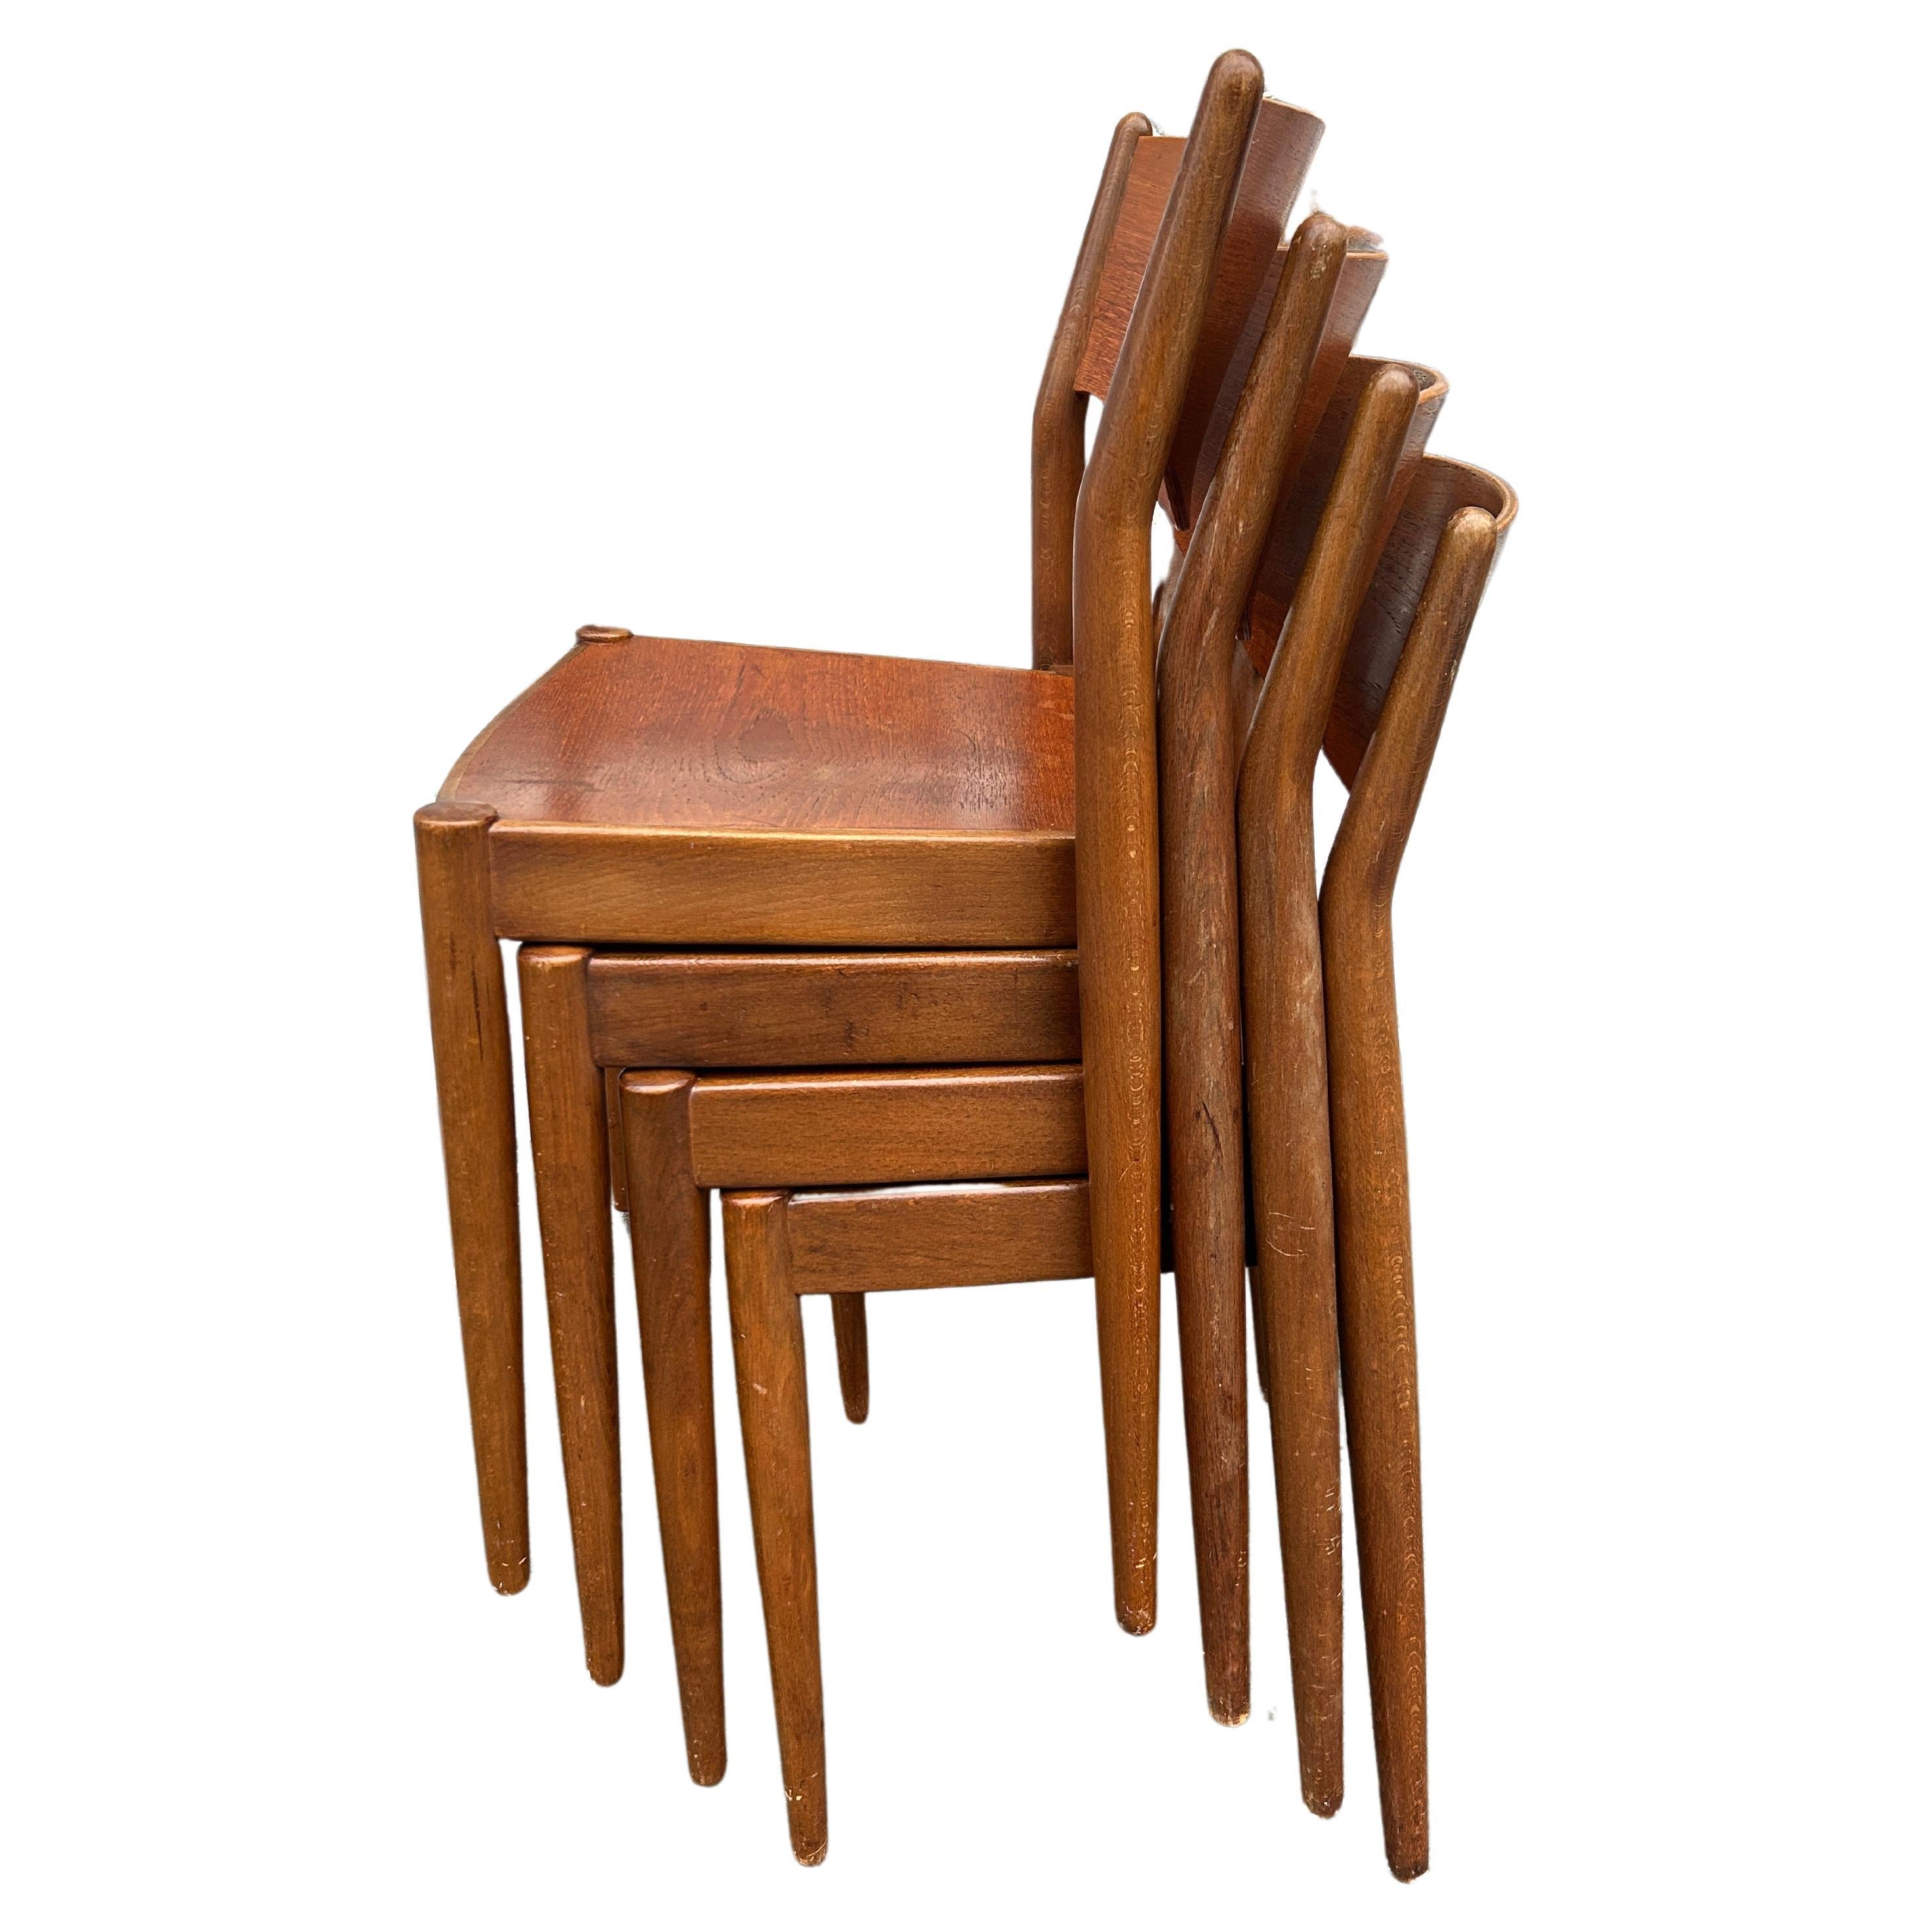 4 chaises de salle à manger empilables en teck de Borge Mogensen pour C.I.C. Madsen. Ensemble de 4 chaises empilables assorties. Tous en bon état vintage étiqueté sur le bas du siège. Fabriqué au Danemark. Situé à Brooklyn NYC.

Vendu comme un